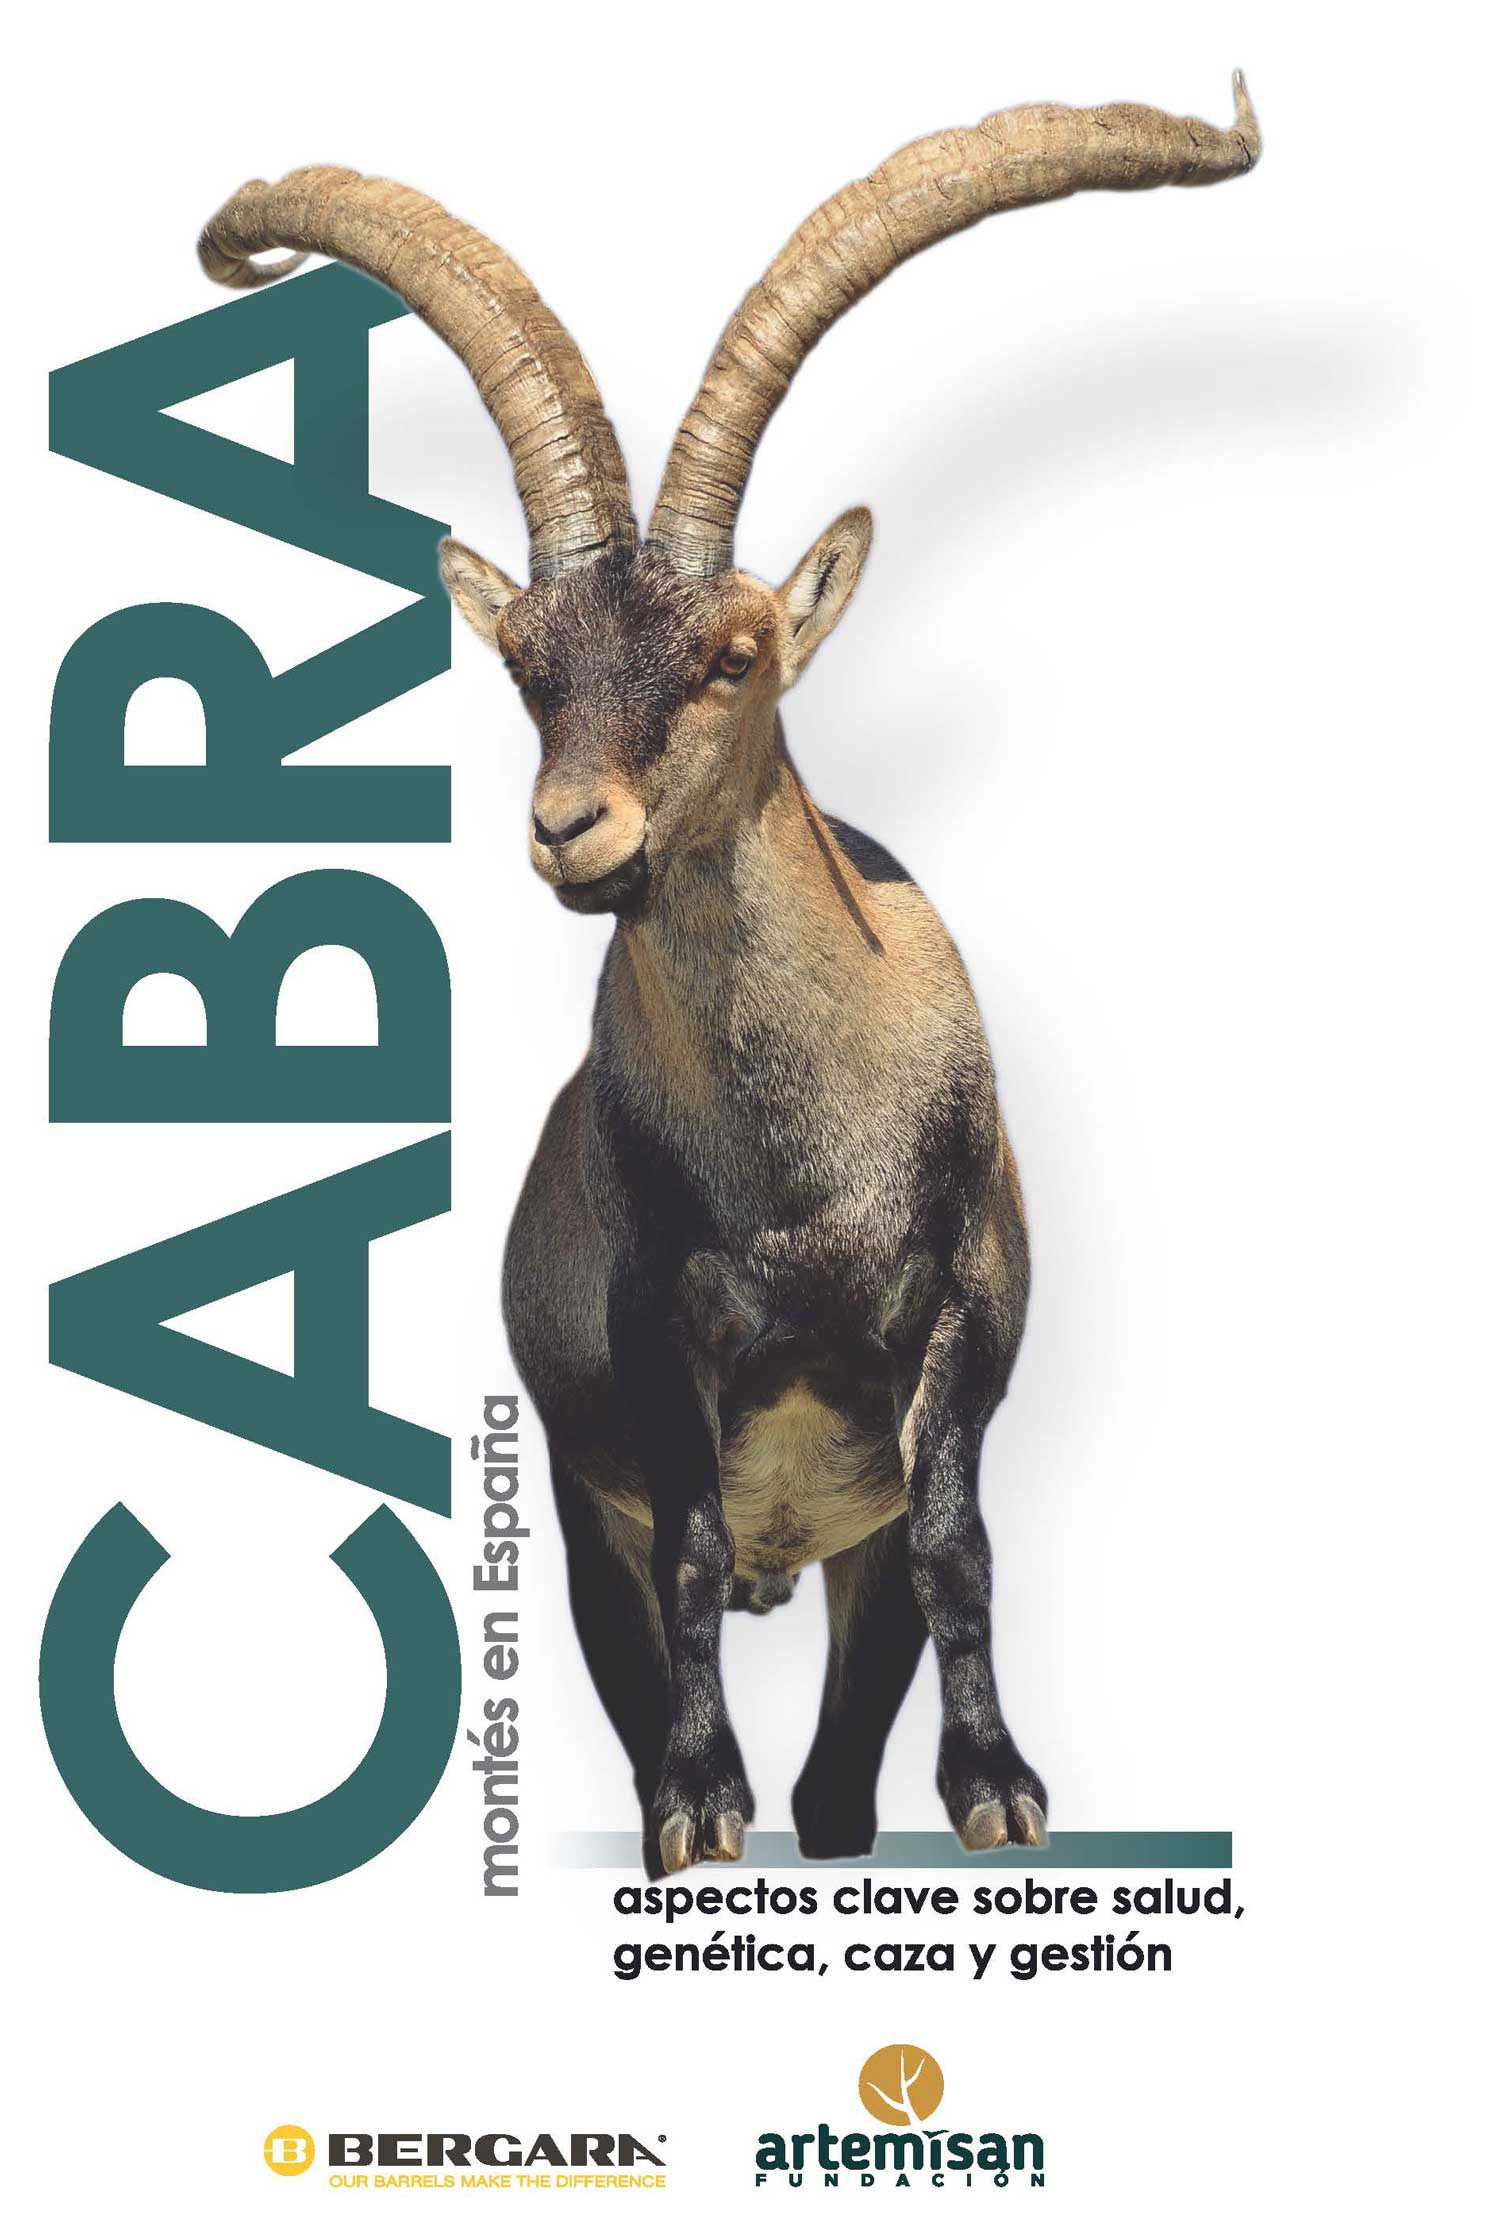 Portada del libro La cabra montés en España: aspectos clave sobre salud, genética, caza y gestión.